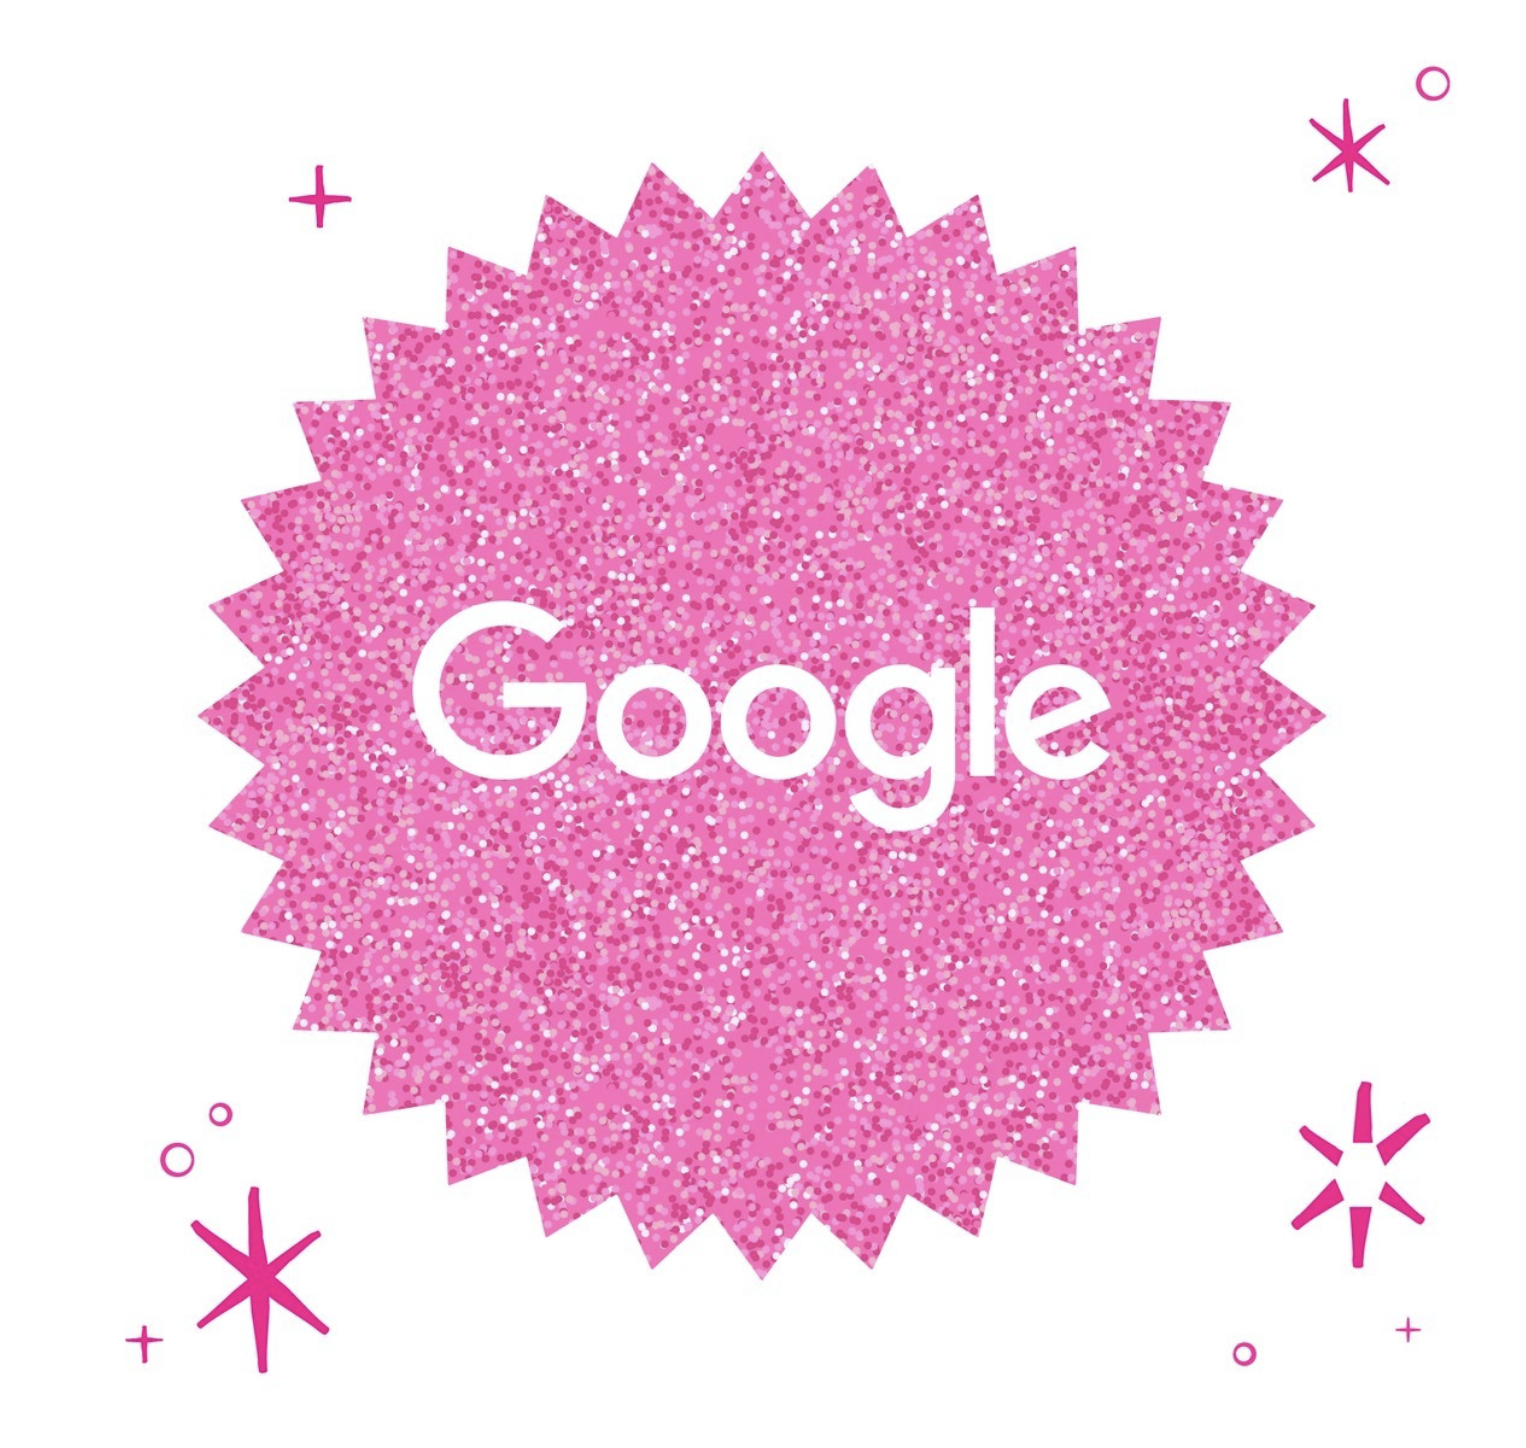 Ketika Google Ikutan ‘Demam’ Barbie, Semua Disulap Jadi Pink!